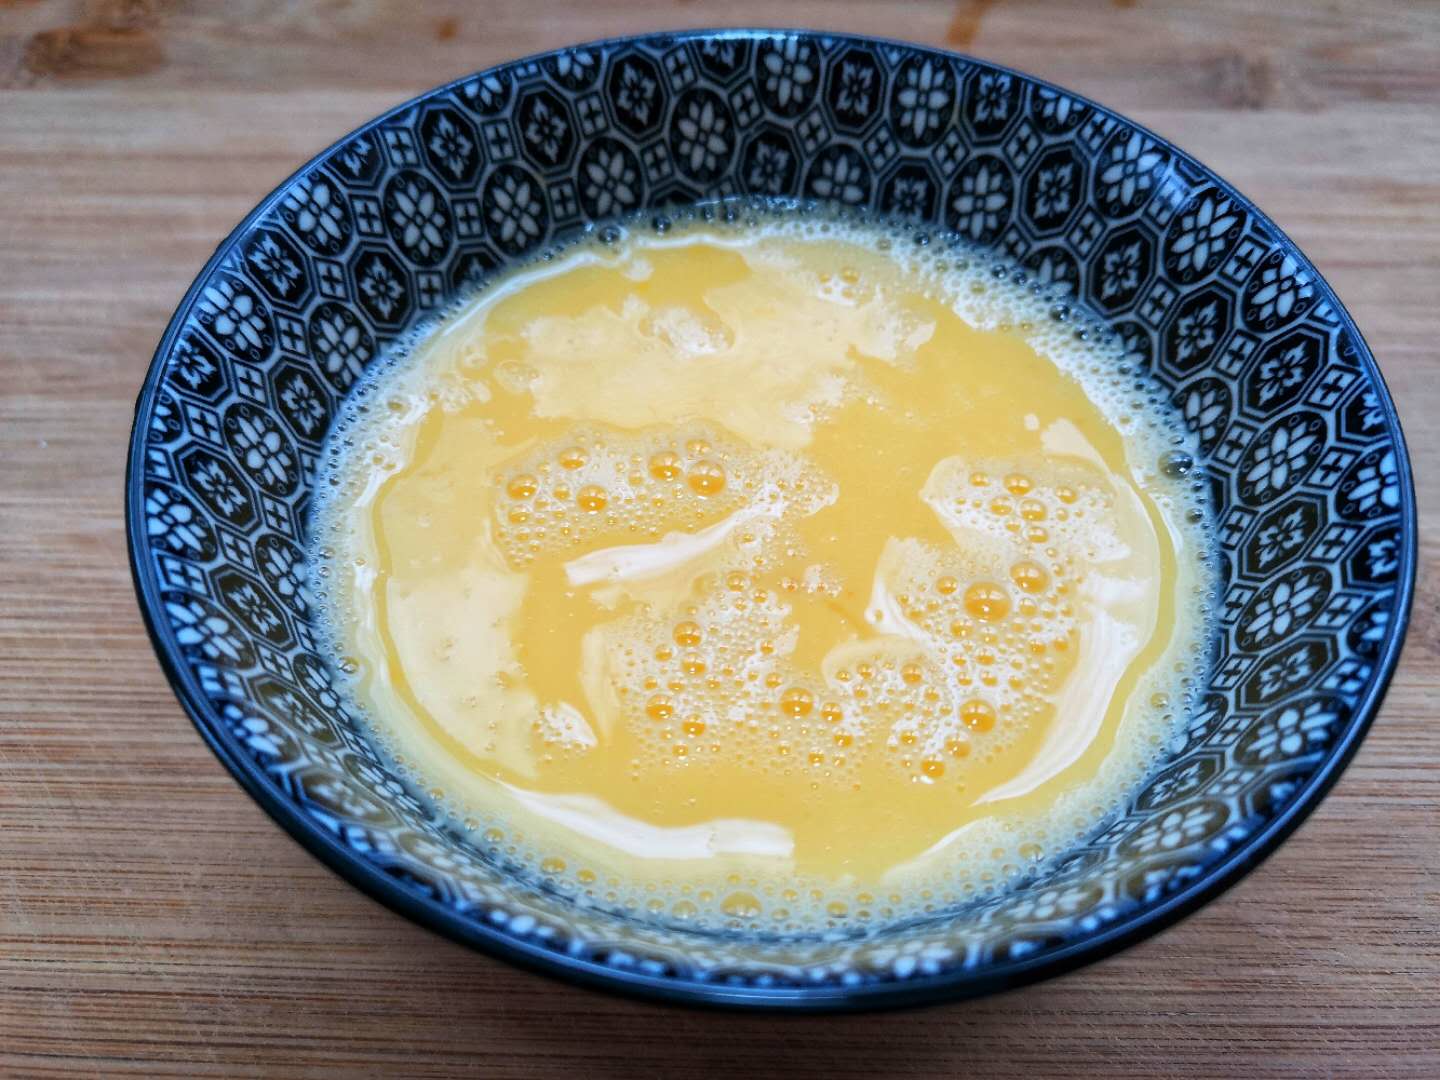 Stir the eggs into egg liquid.